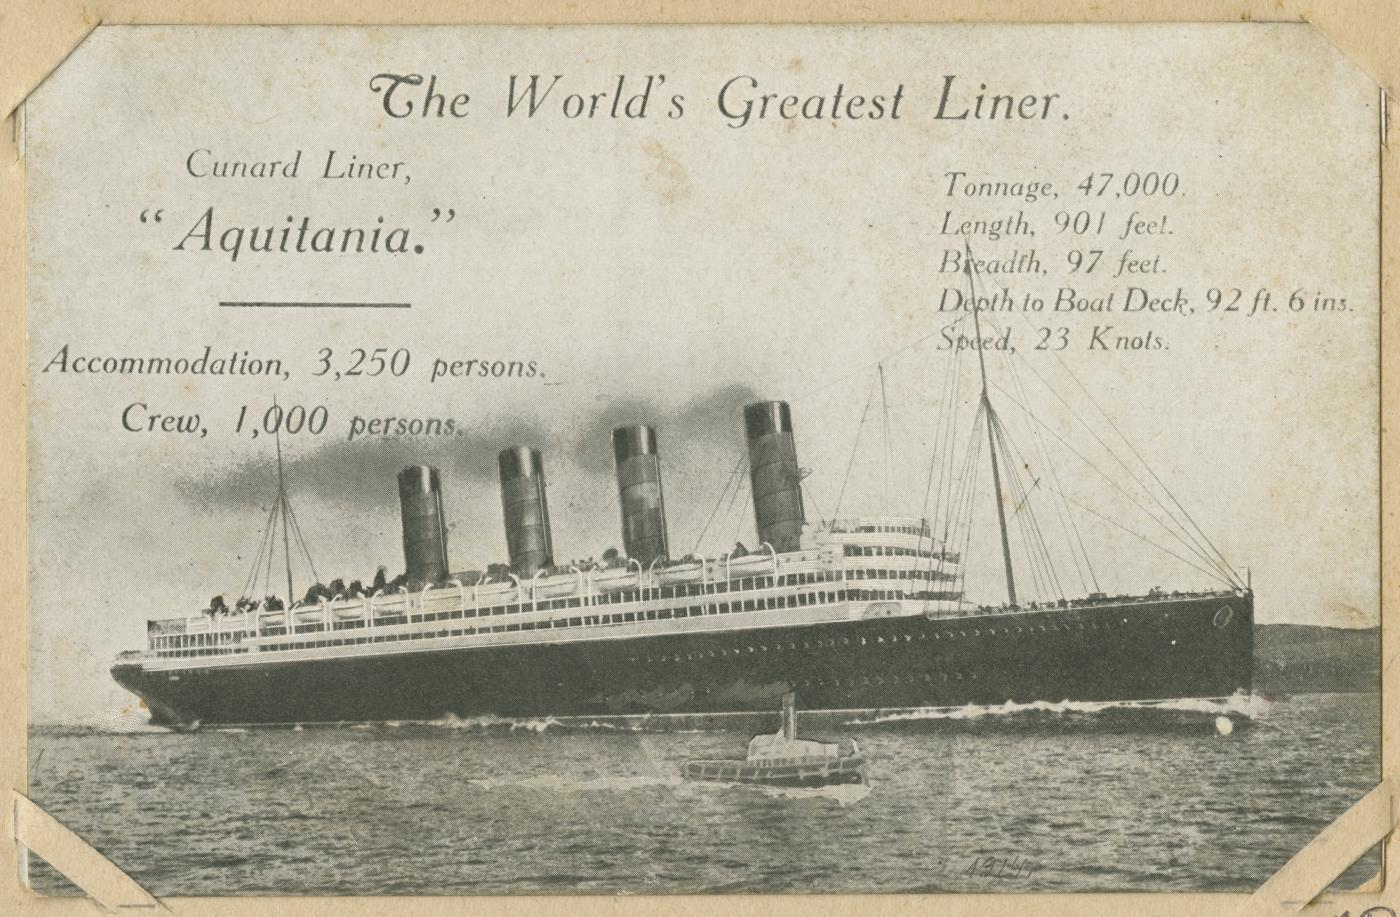 Gunard Line'i ookeaniaurik RMS "Aquitania"